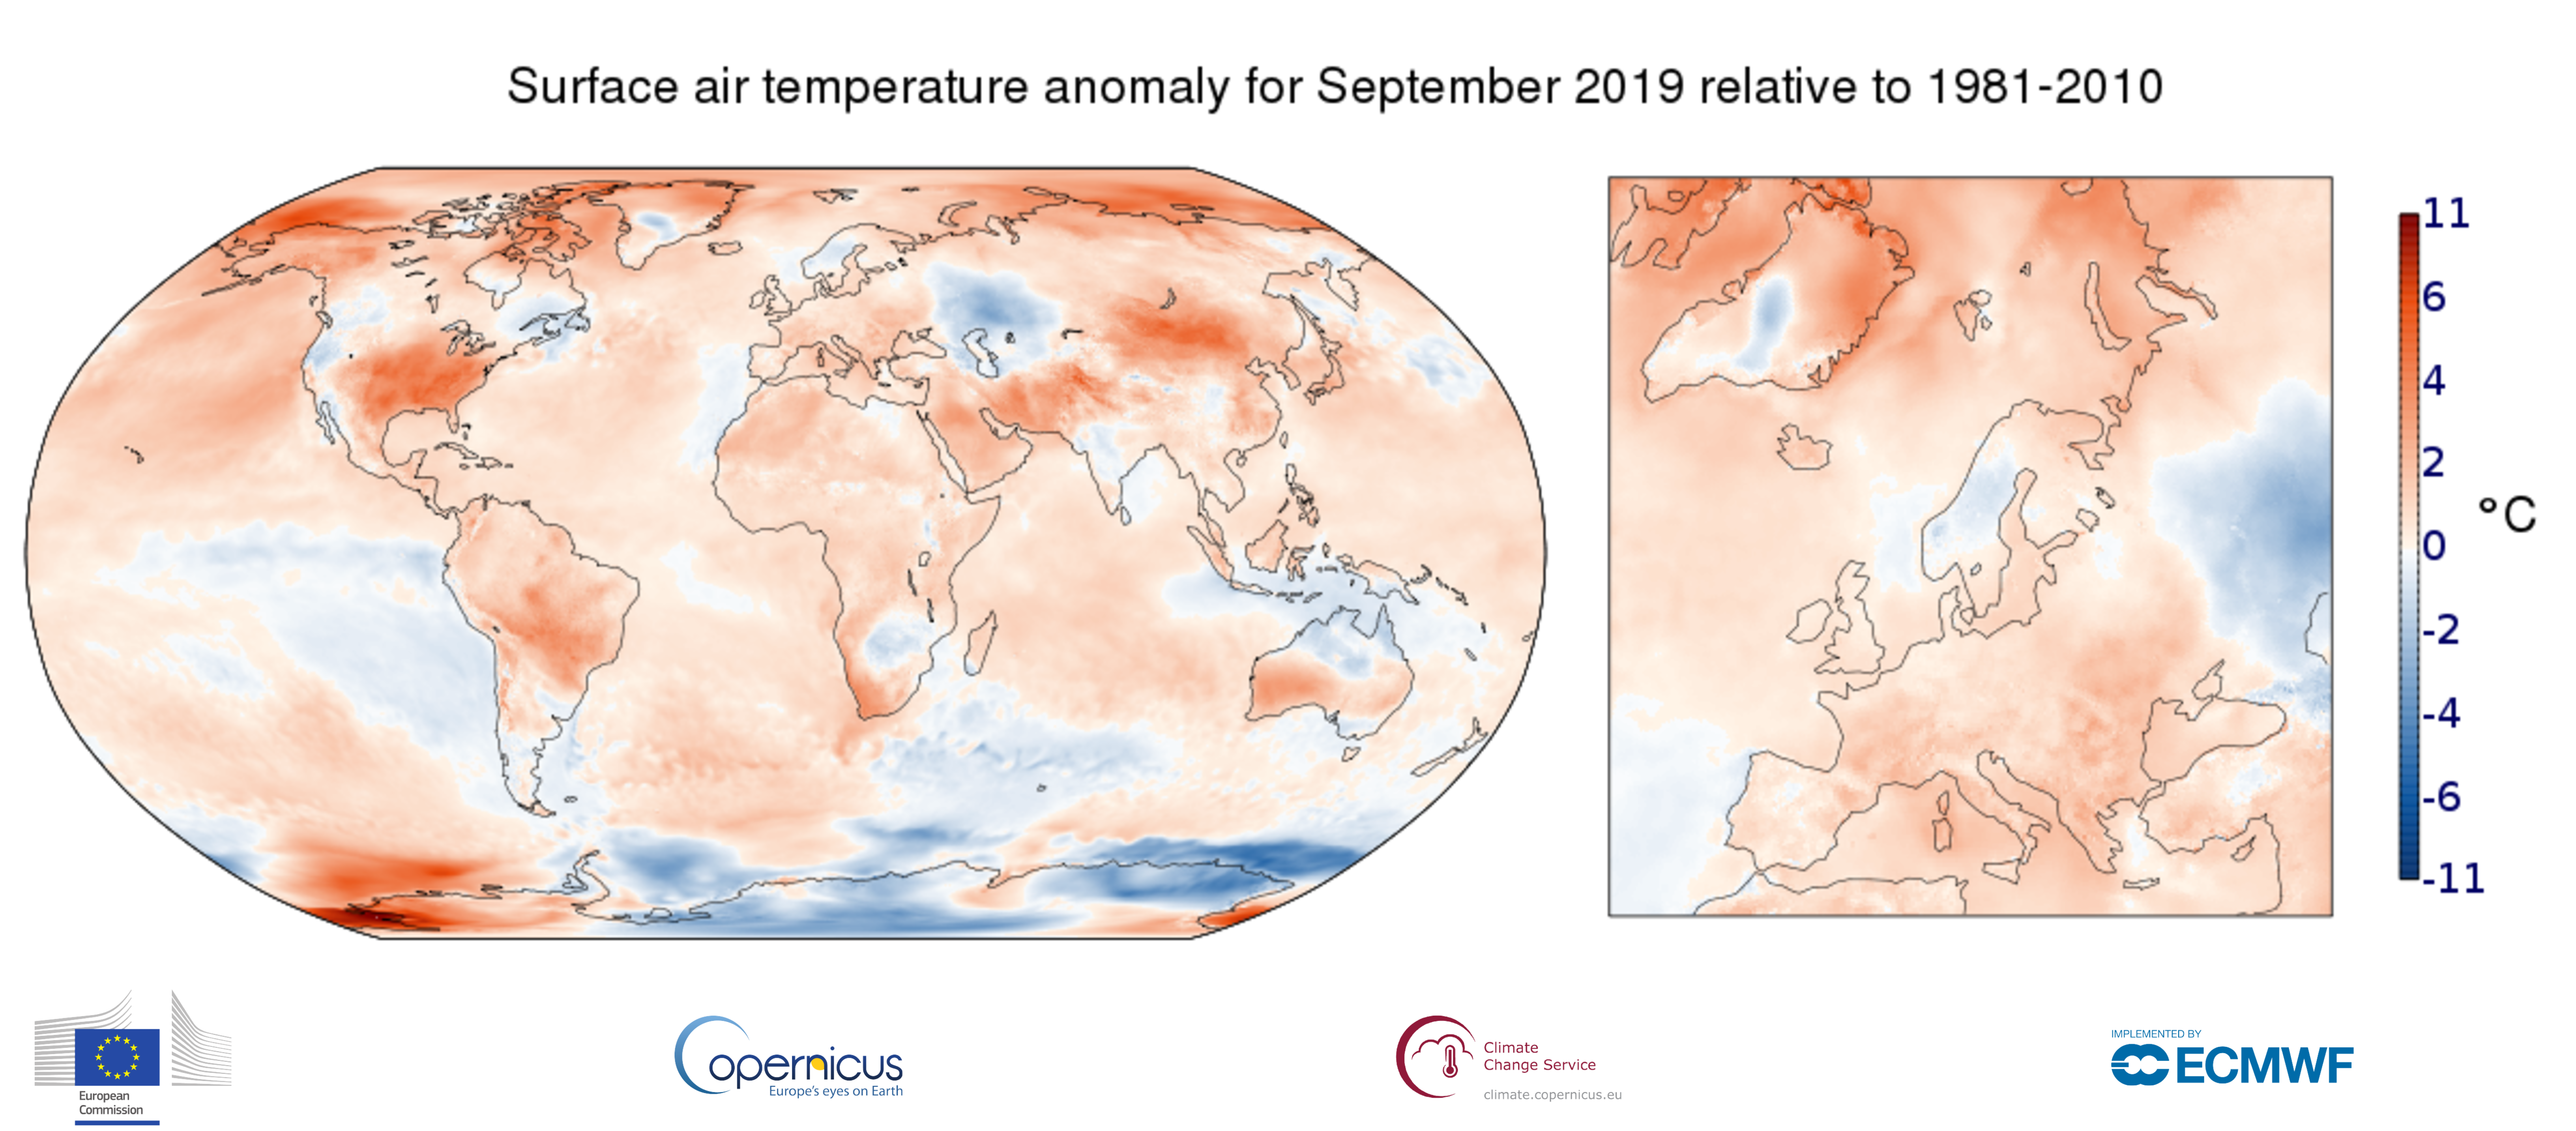 Temperaturafvigelserne fra normalen for september 2019